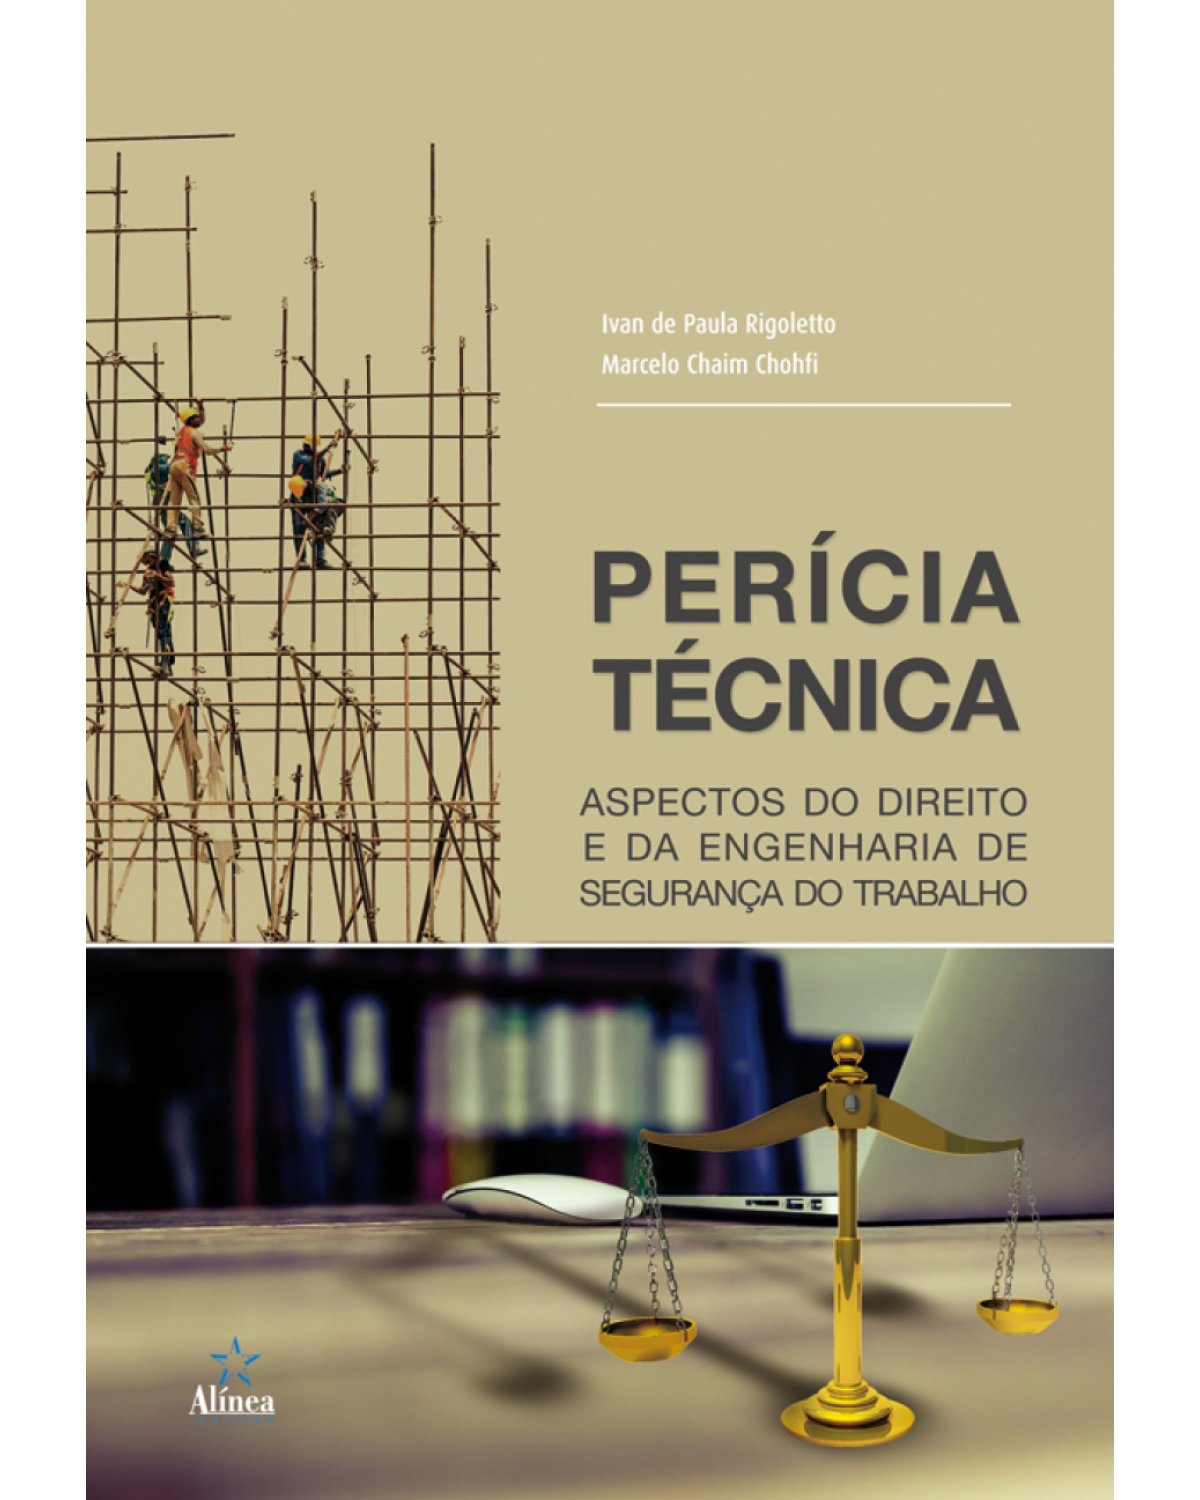 Perícia técnica: Aspectos do direito e da engenharia de segurança do trabalho - 1ª Edição